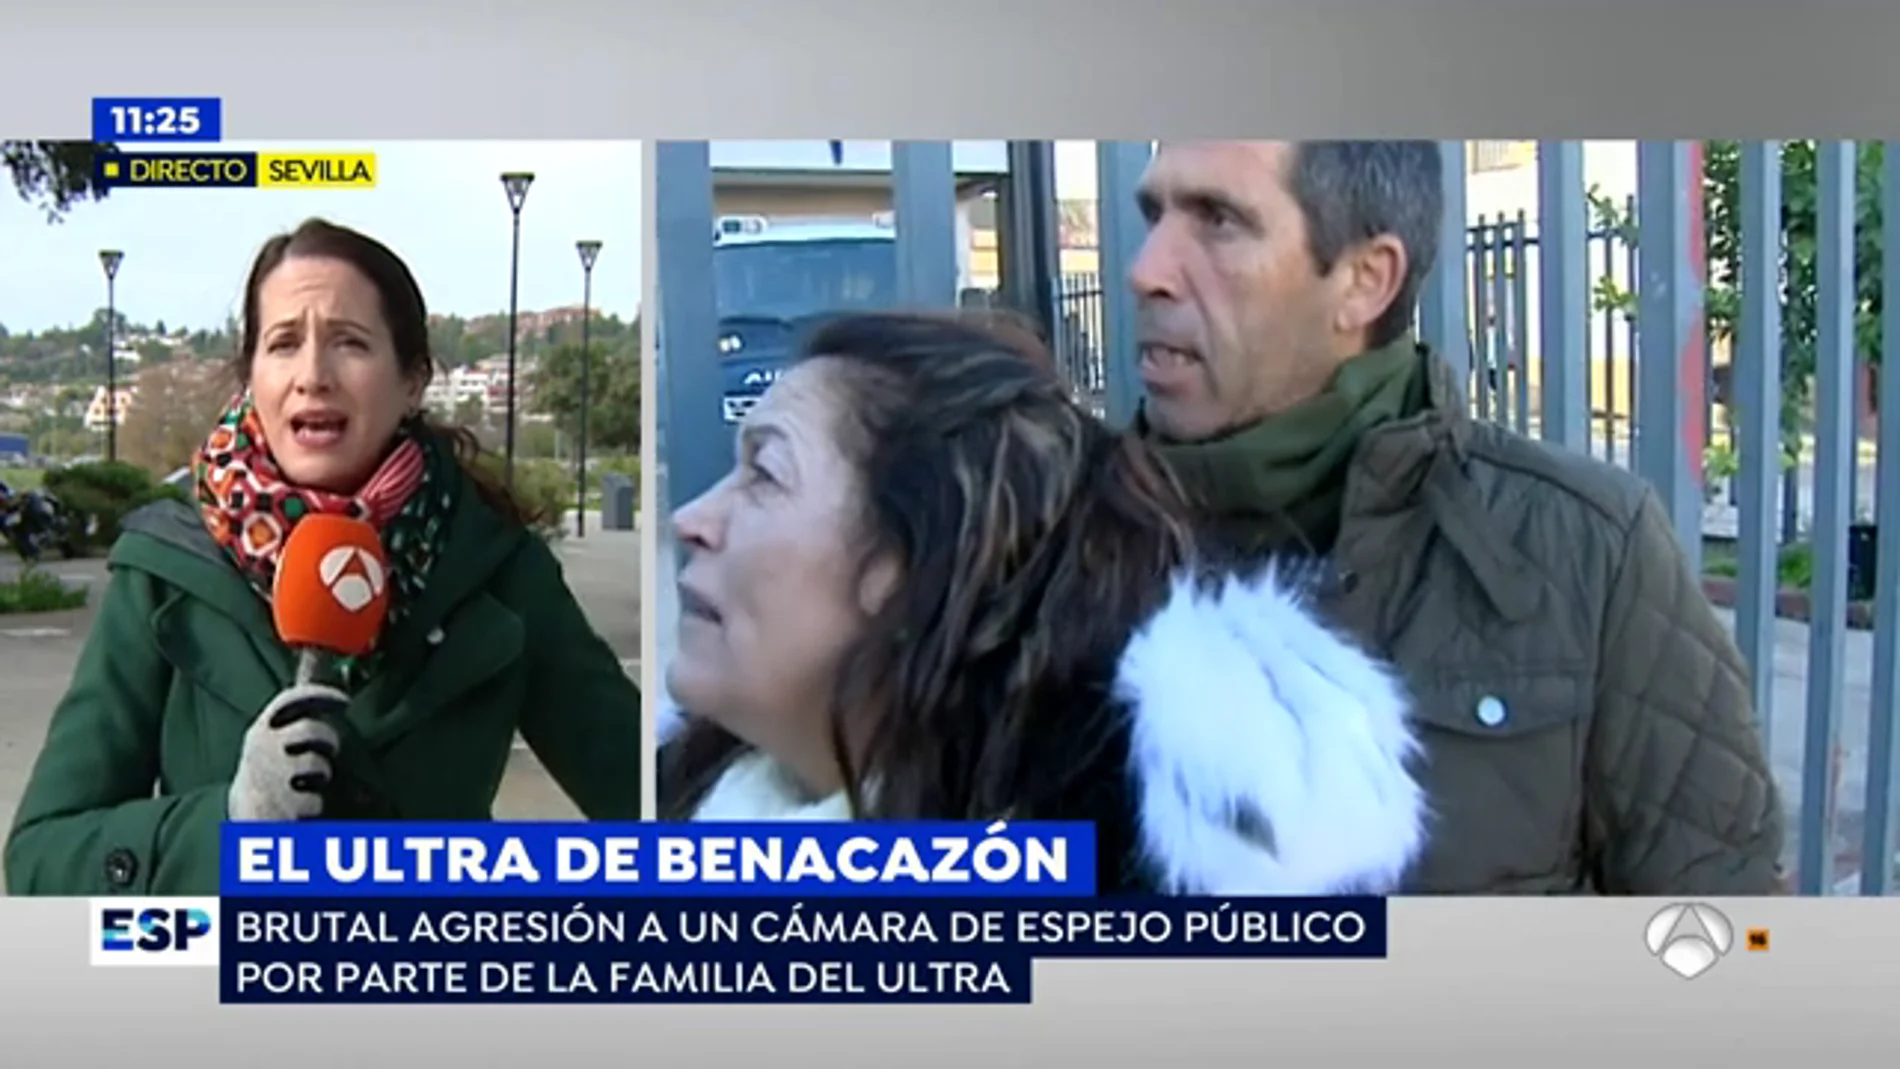 La familia del ultra del Betis agrede brutalmente a un cámara de 'Espejo Público'